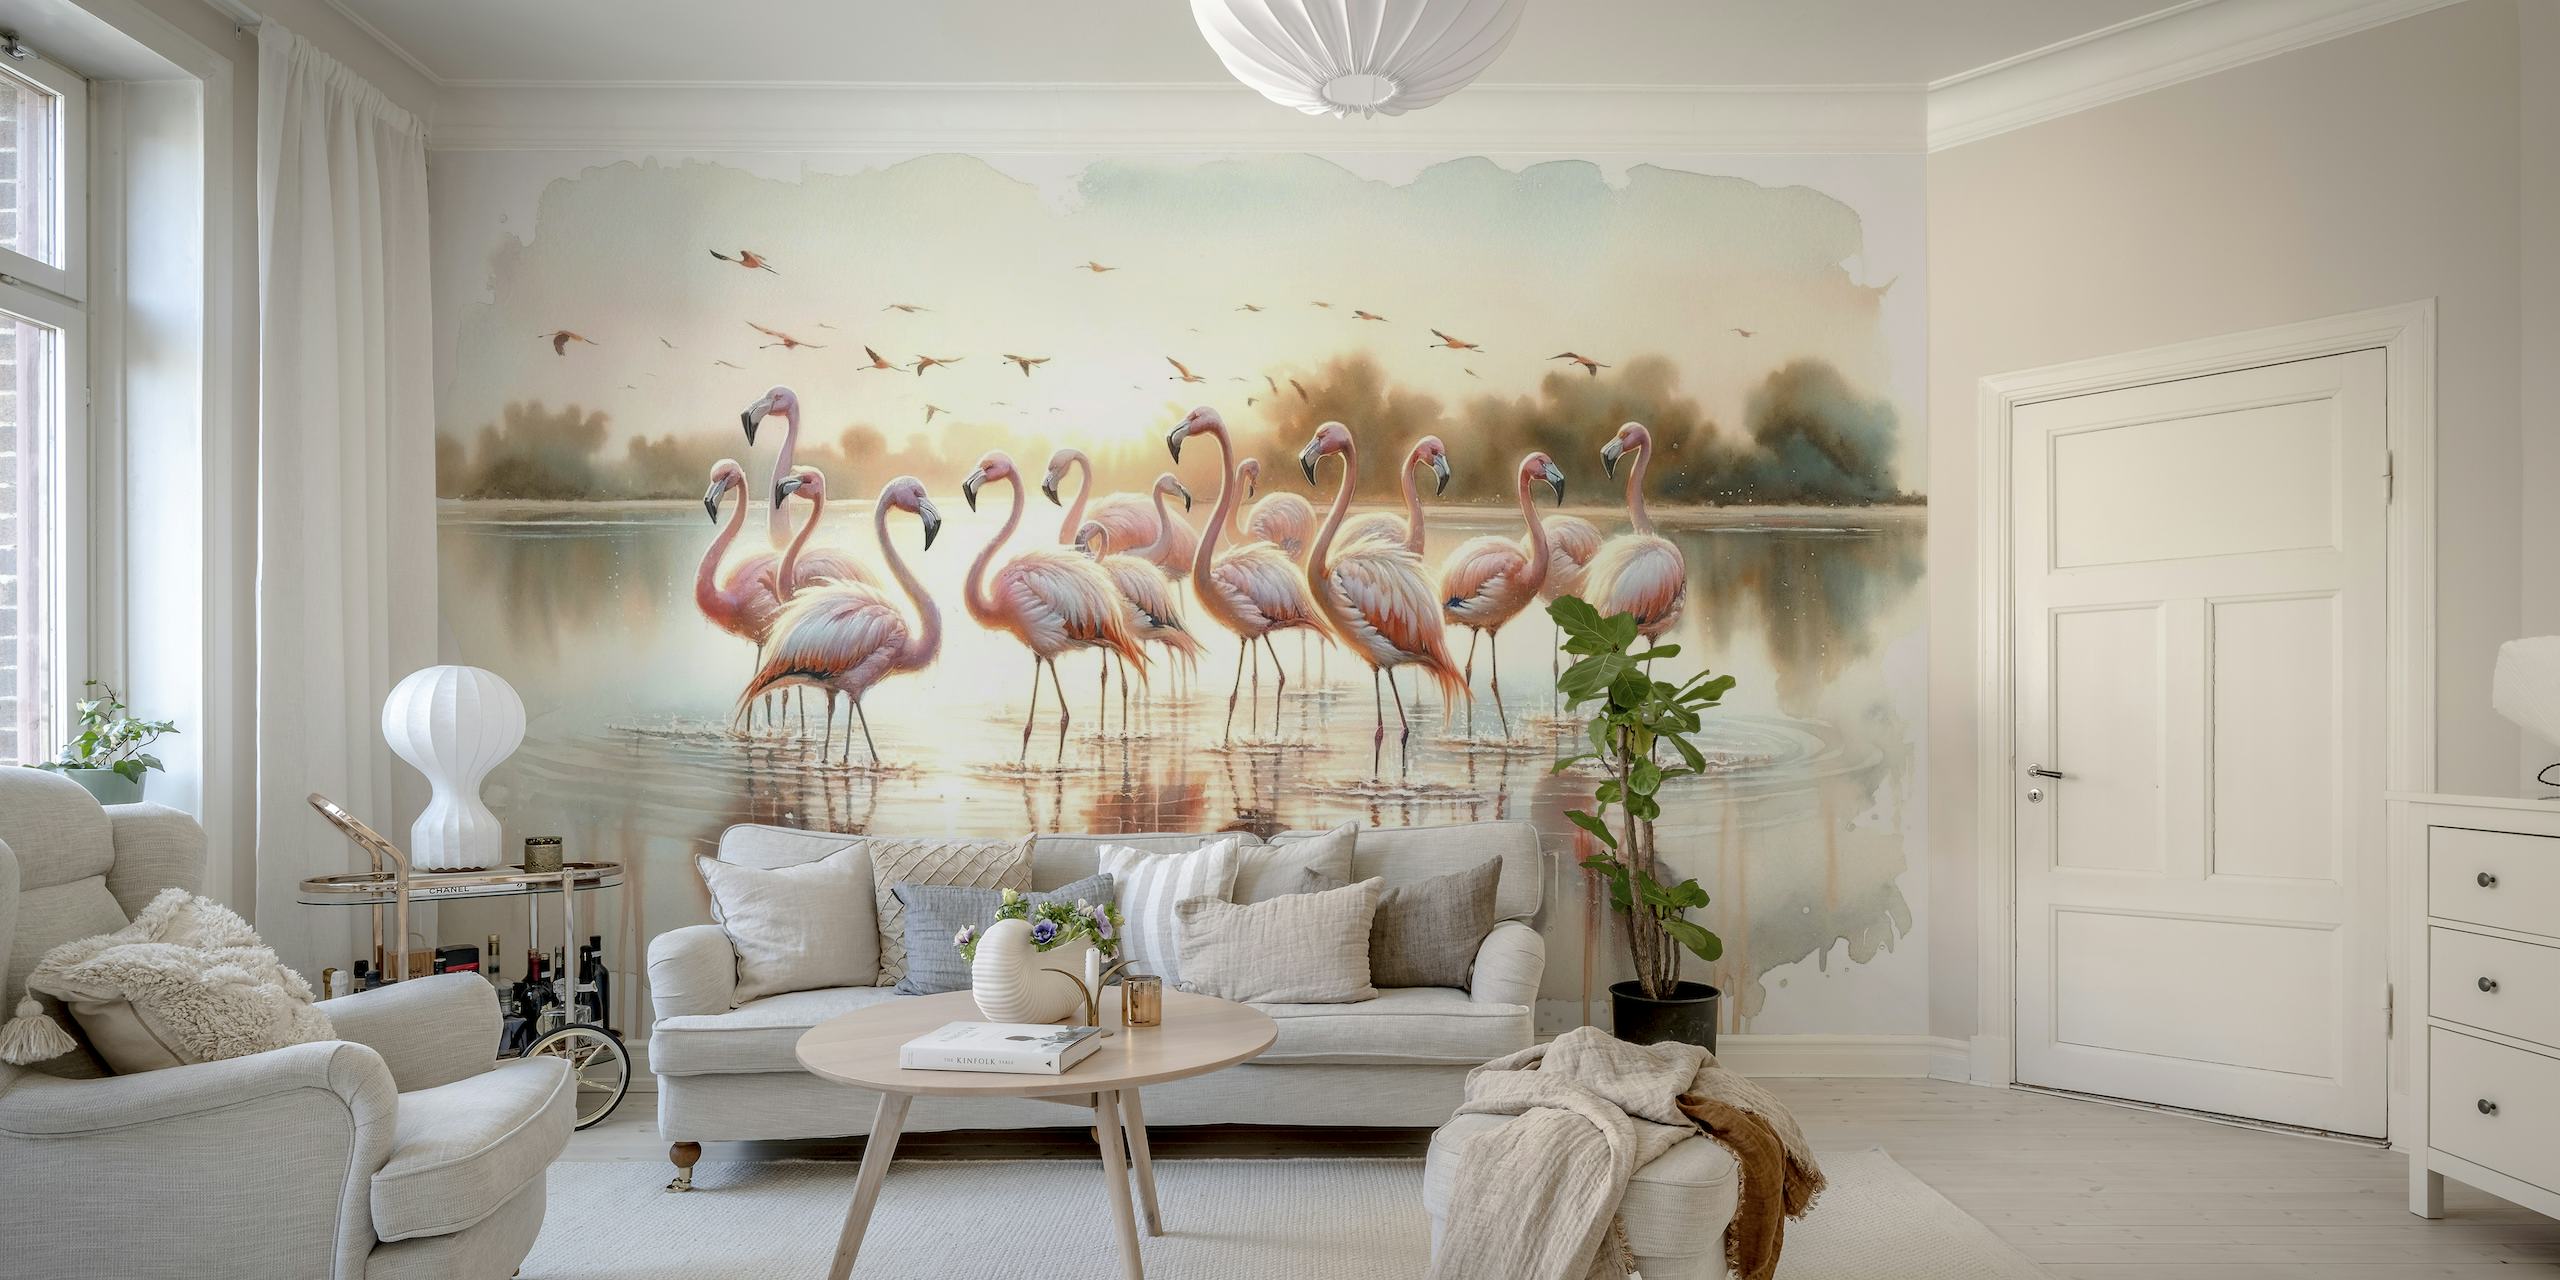 En fredfyldt forsamling af flamingoer ved solopgang med vandreflektioner i et vægmaleri i akvarelstil.